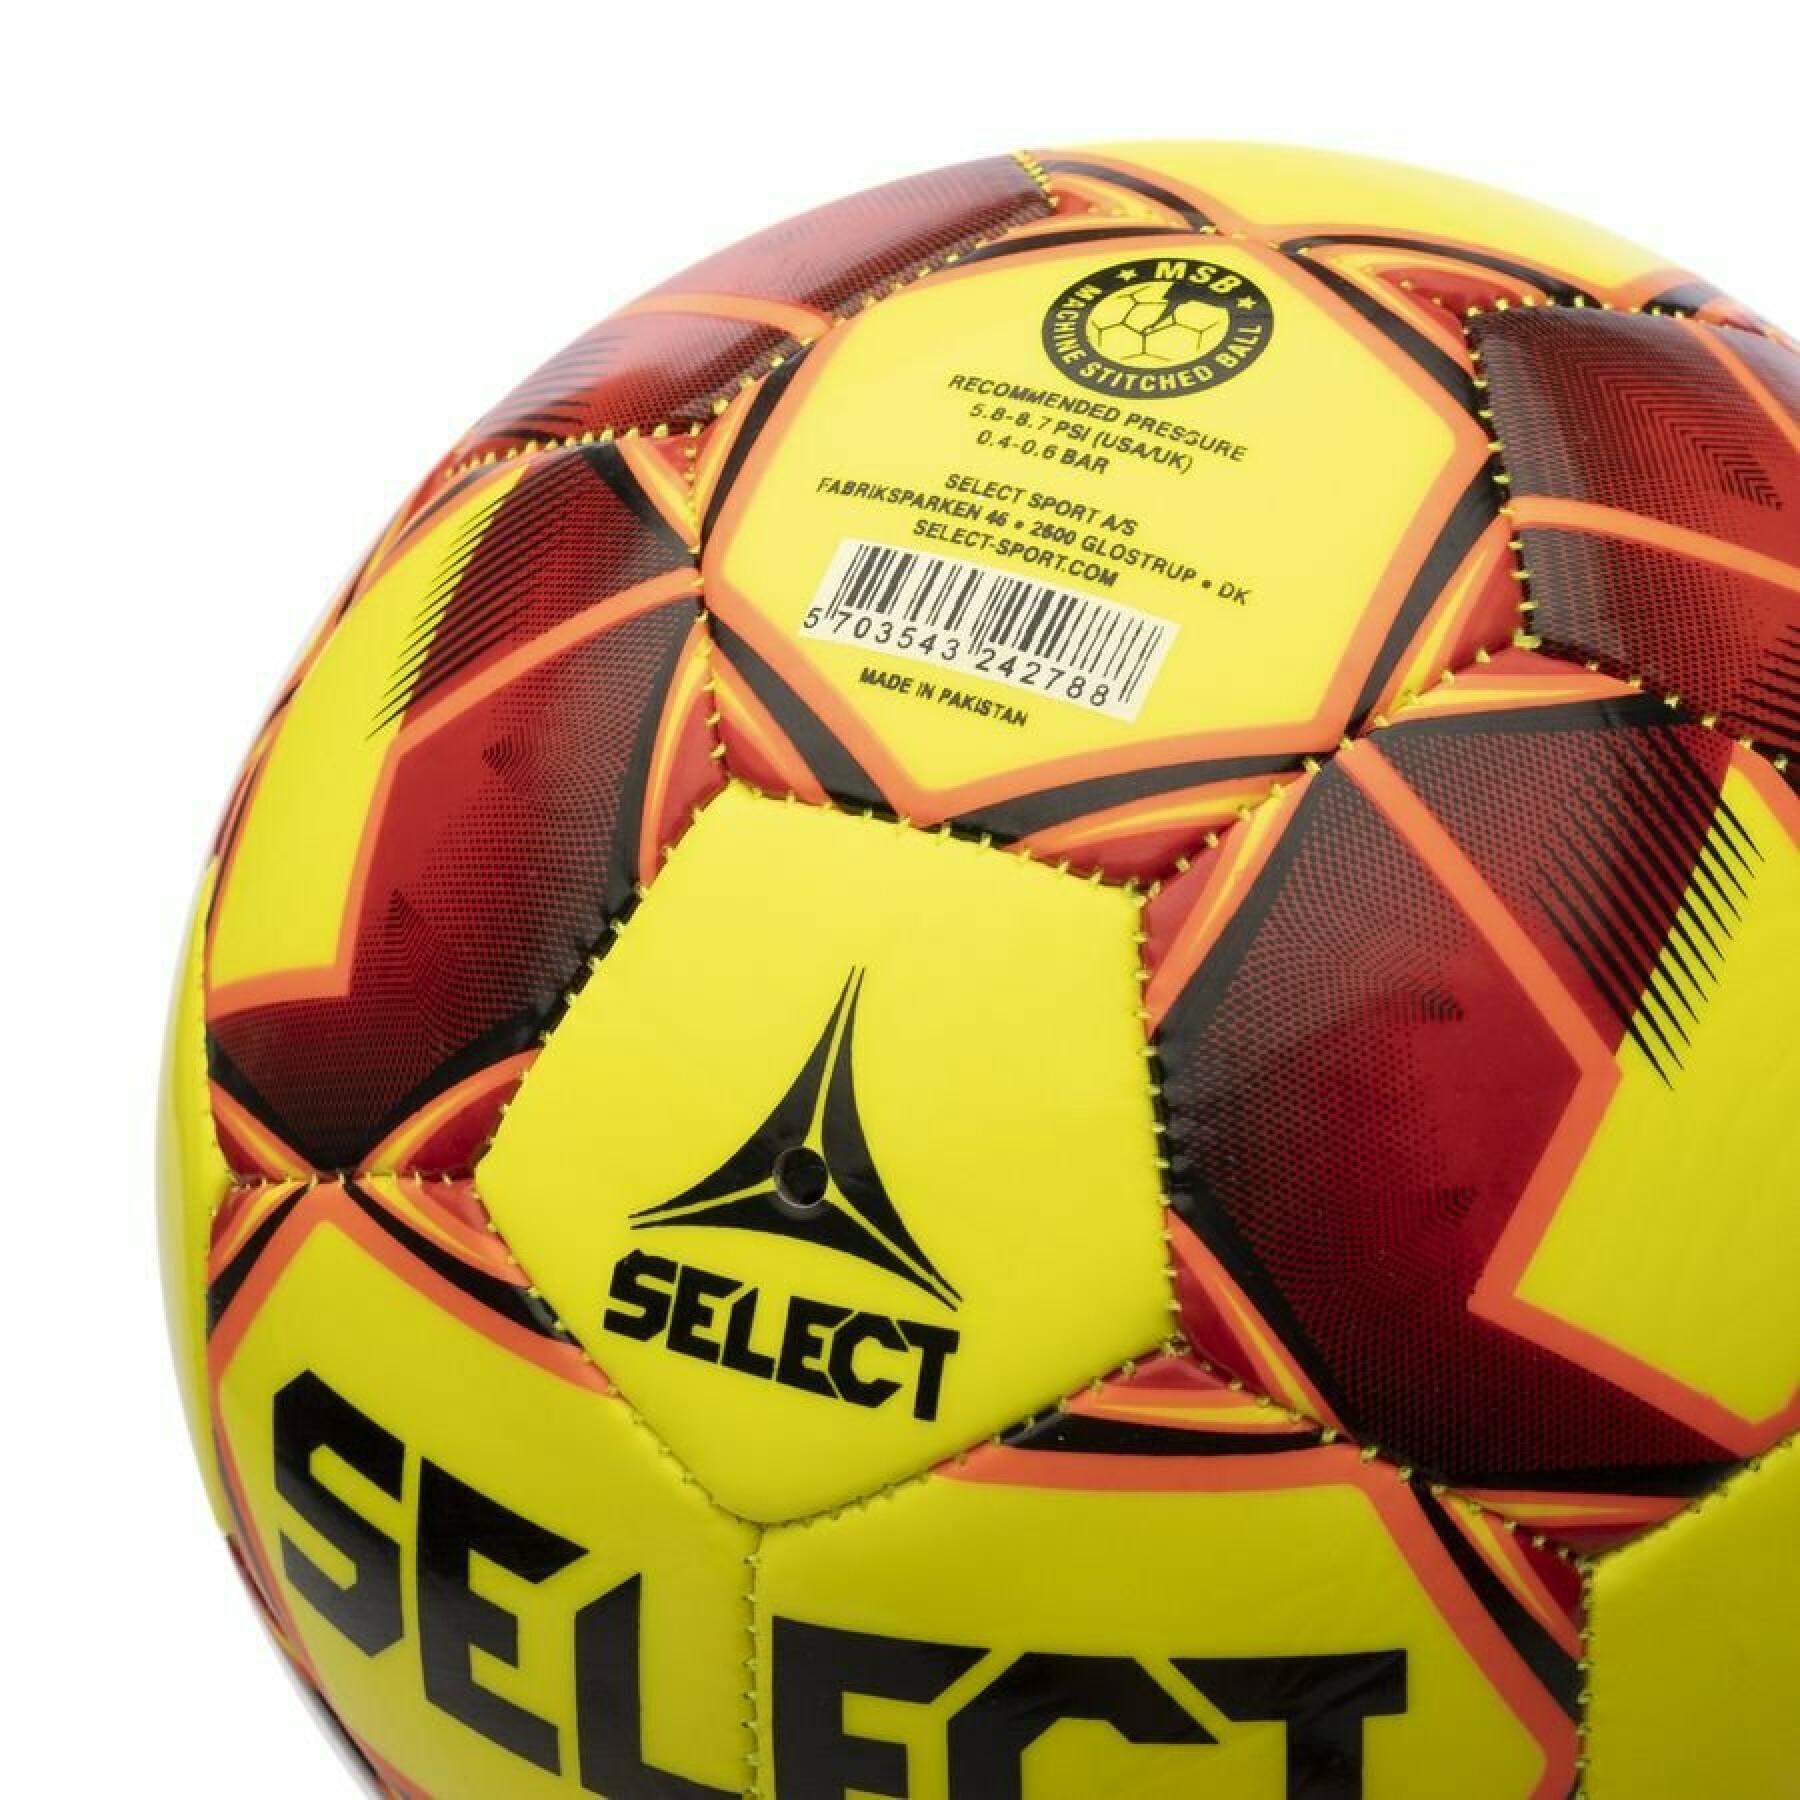 Ballon Select Futsal Talento 11